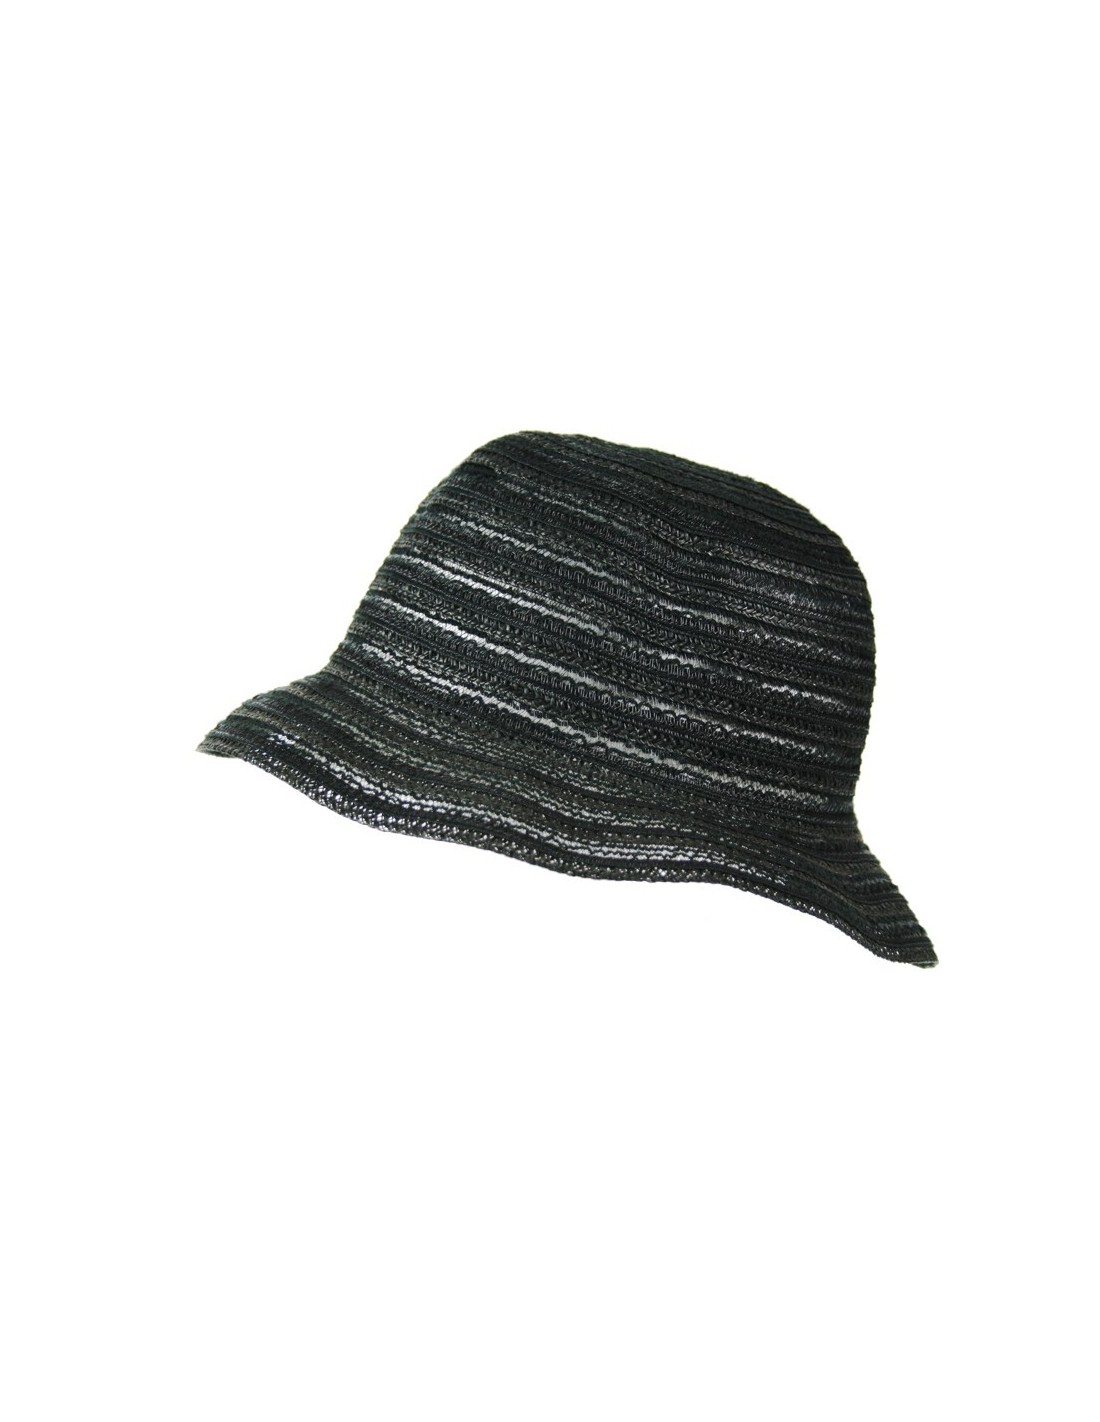 Sombrero de color negro y tejido calado para los días de primavera y verano Sombrero de calidad ideal para realizar regalo en el